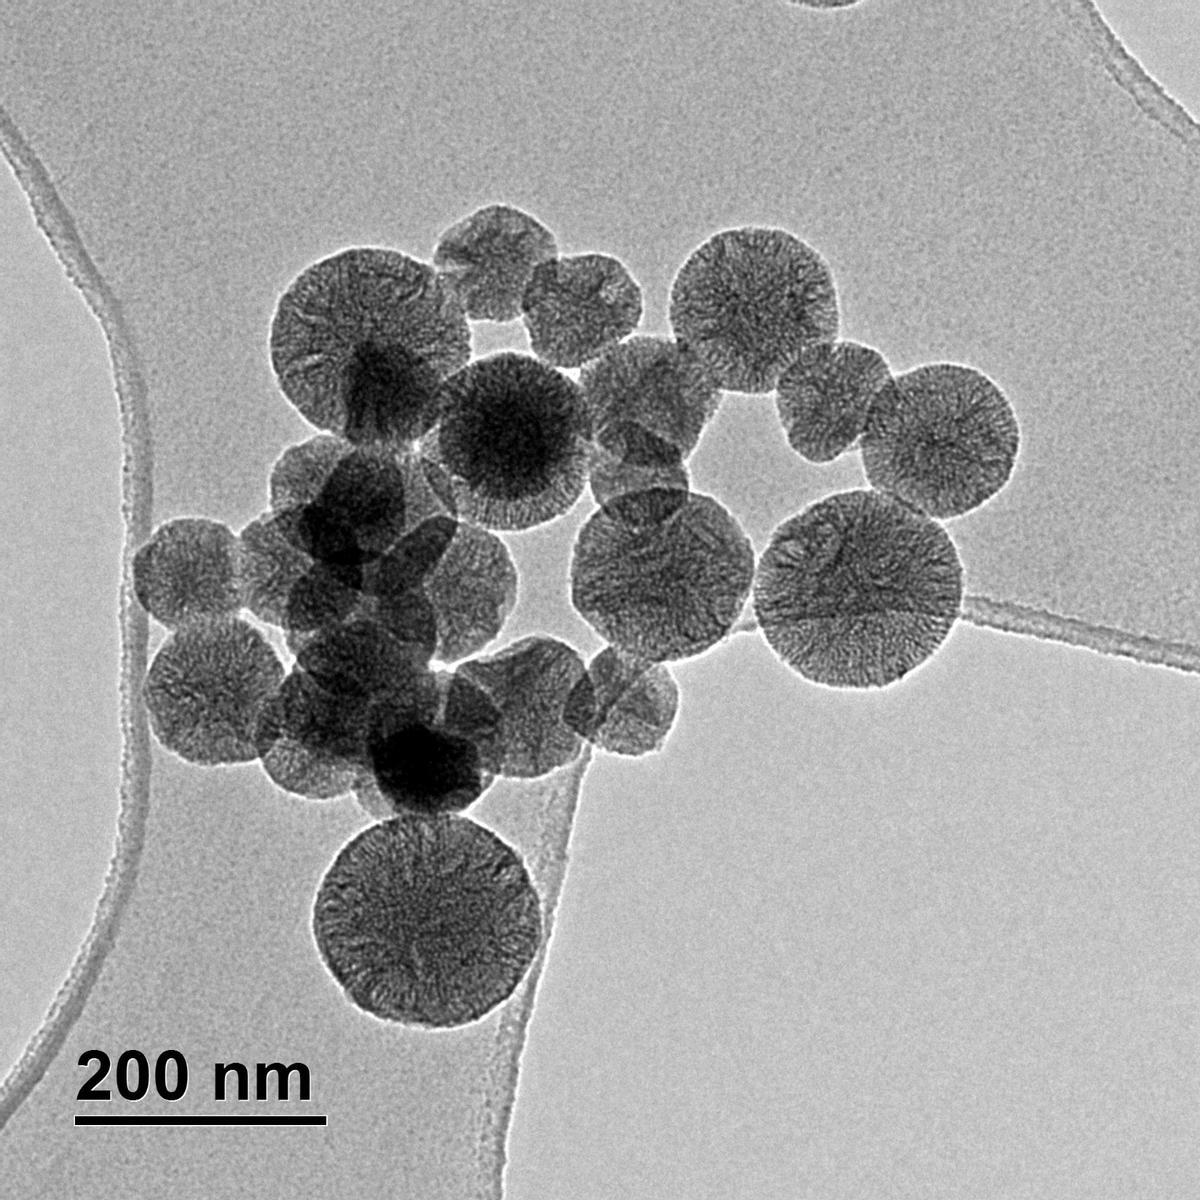 Nanopartículas mesoporosas de sílice obtenidas con TEM (microscopio de transmisión electrónica), con las que trabaja Daria Lebed